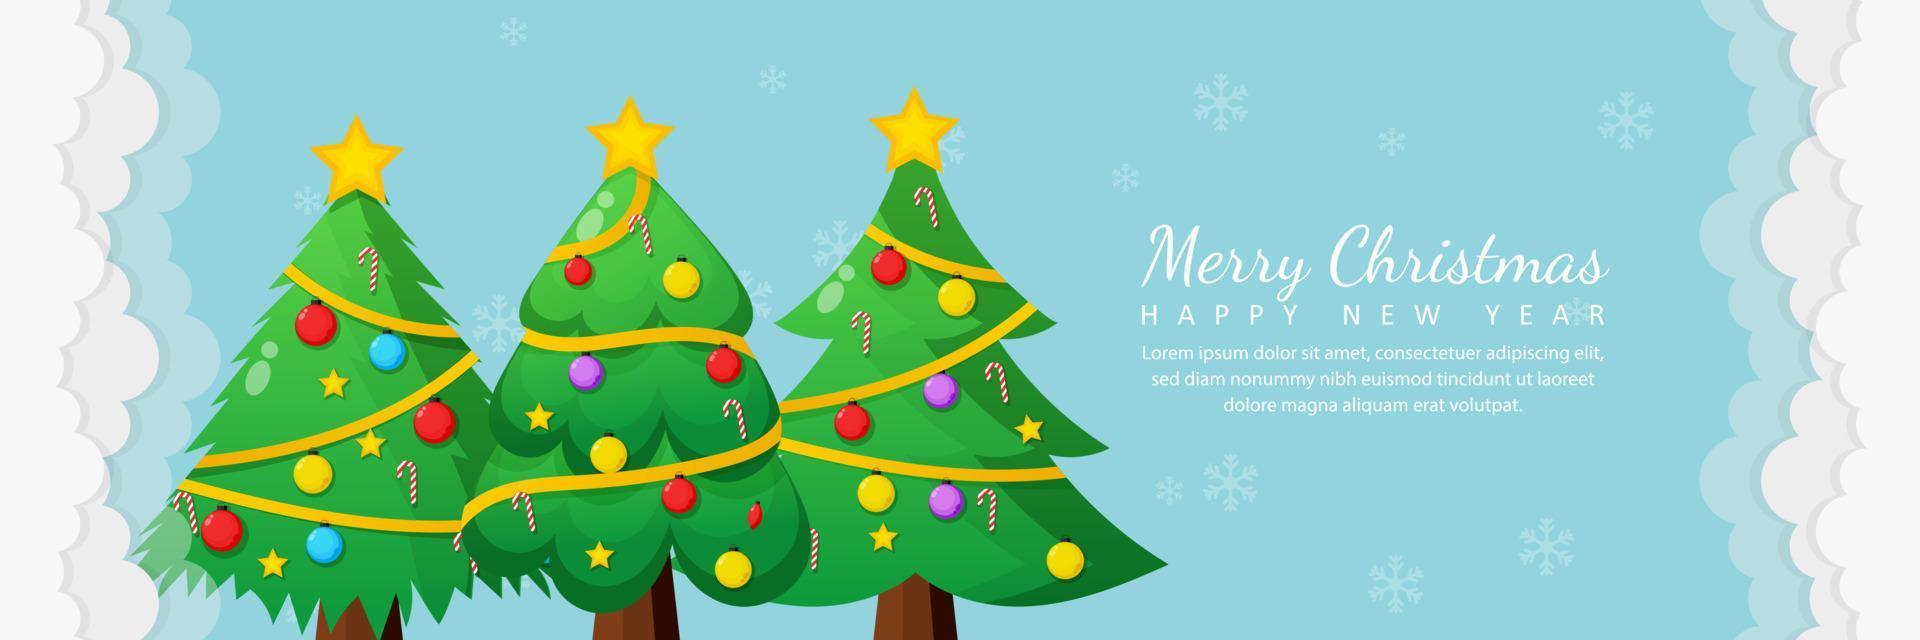 Feliz natal e feliz ano novo cartão com árvore de natal vetor